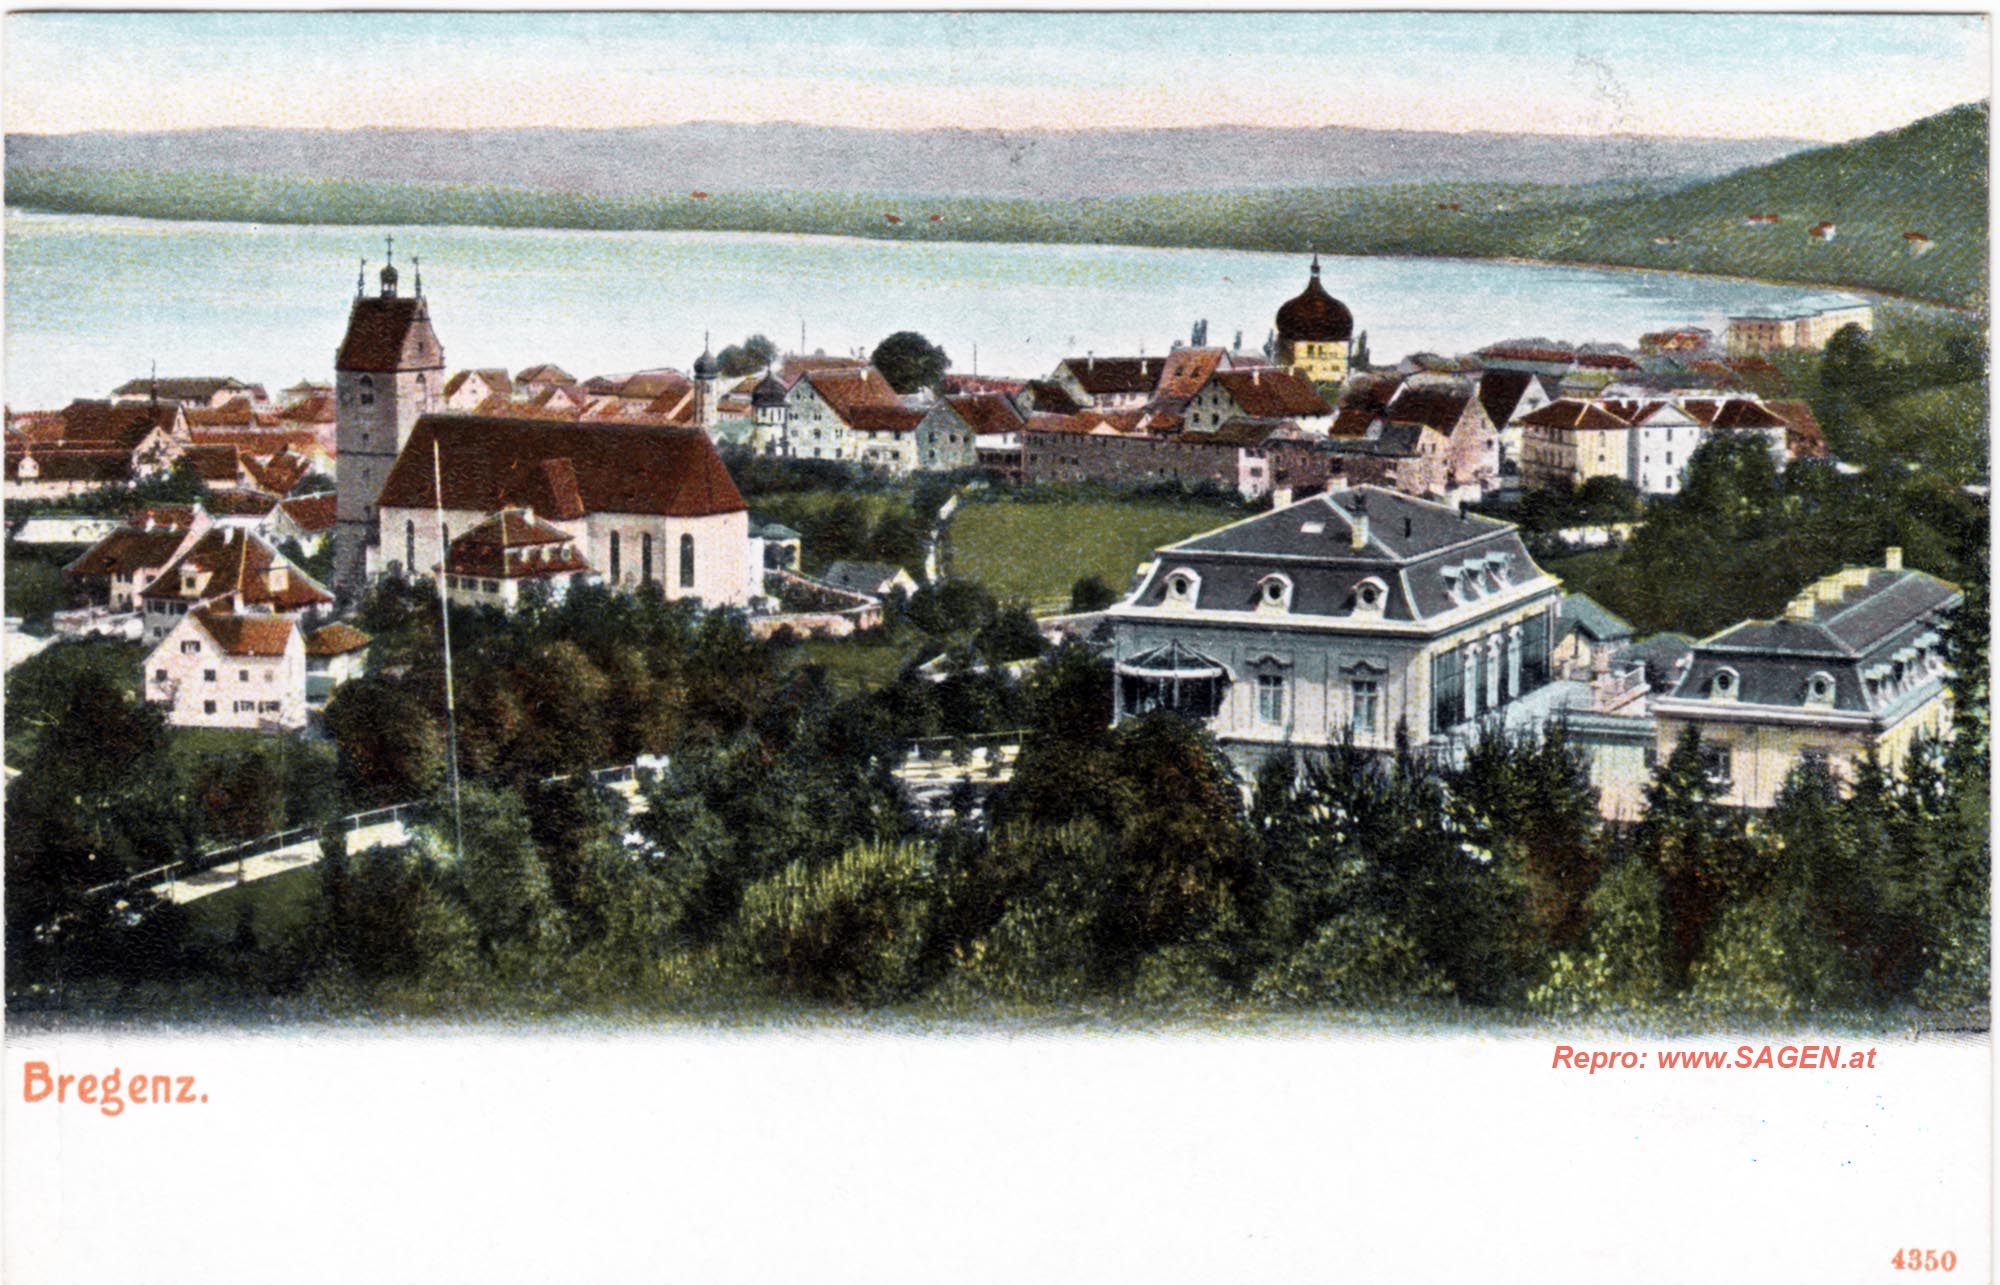 Bregenz vor 1905